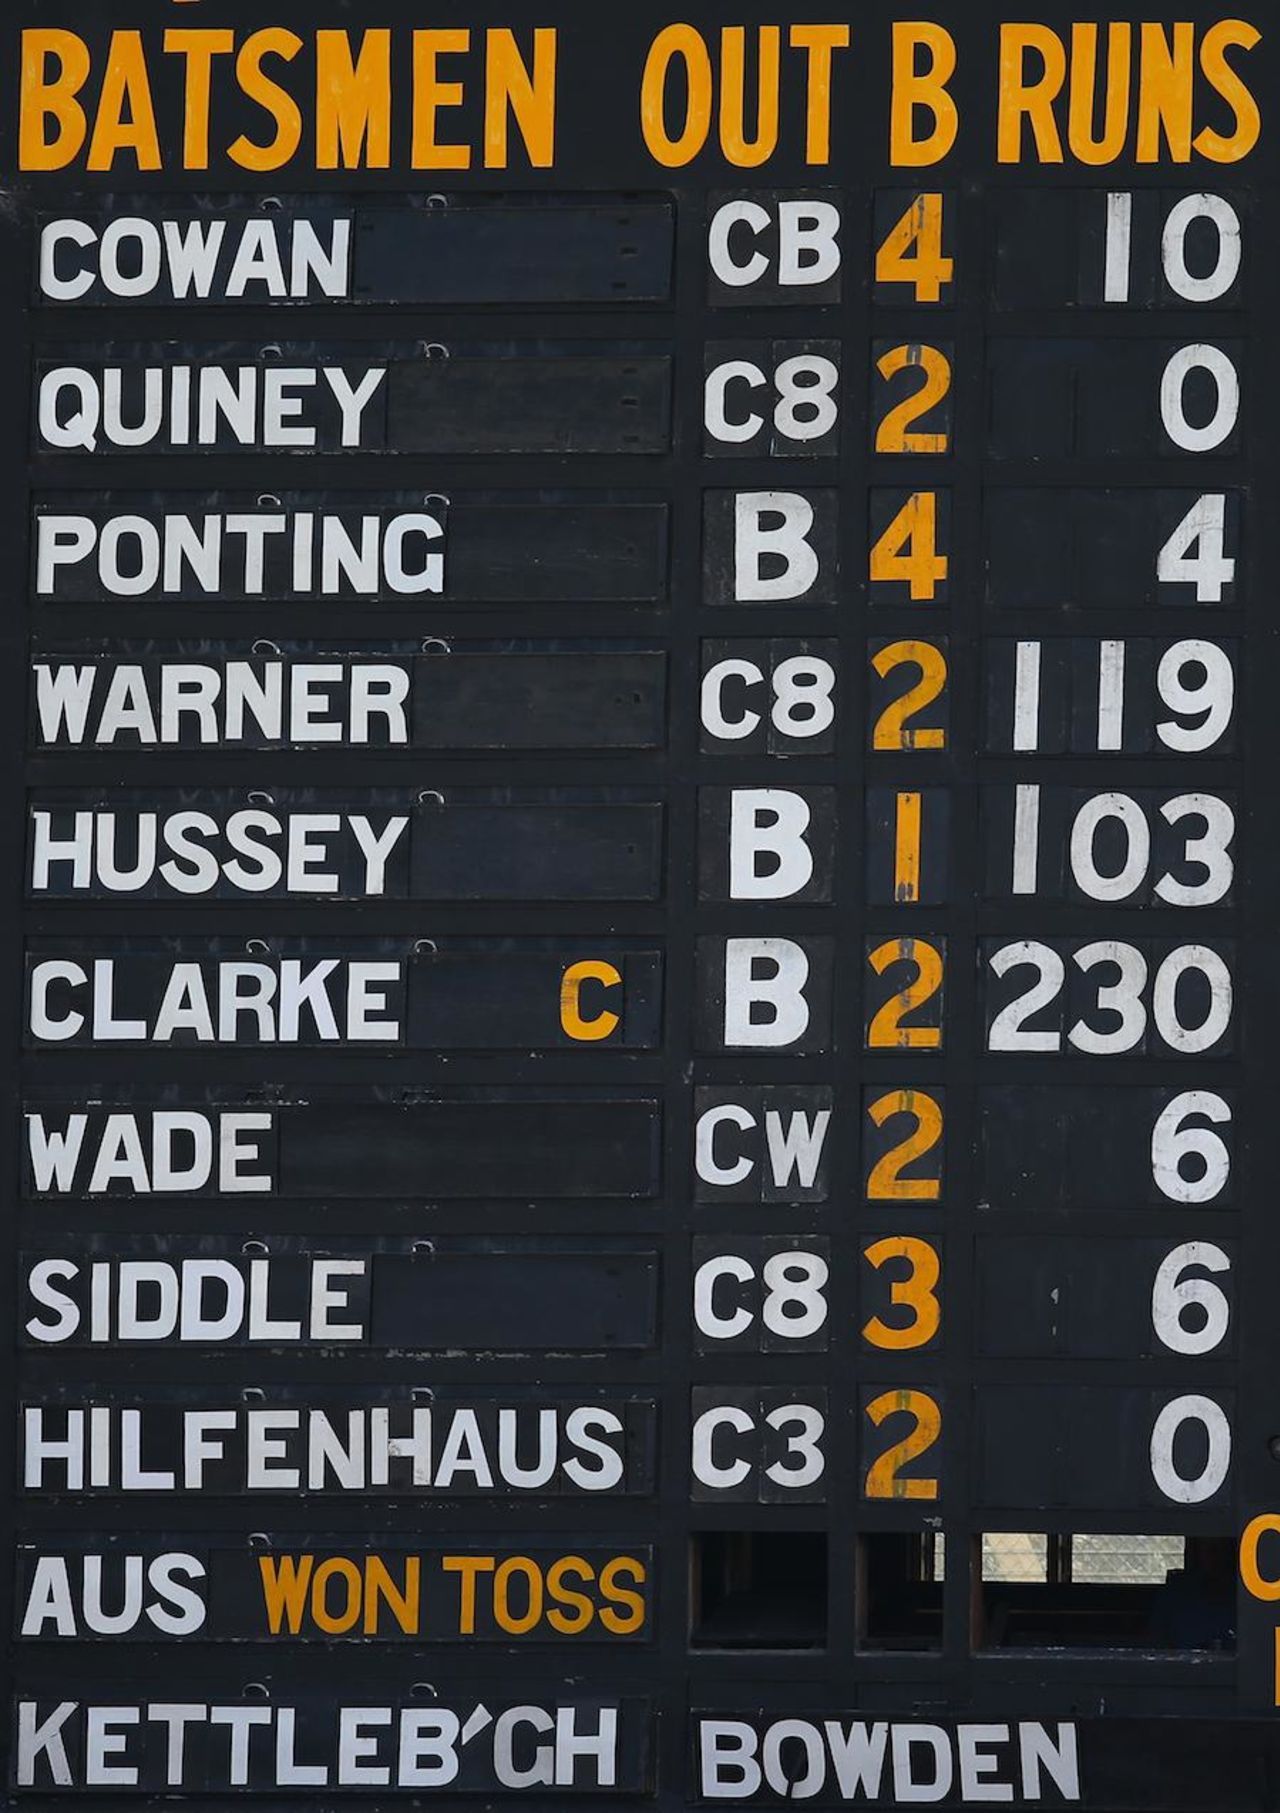 Australia's innings on the old scoreboard, Australia v South Africa, 2nd Test, Adelaide, 2nd day, November 23, 2012